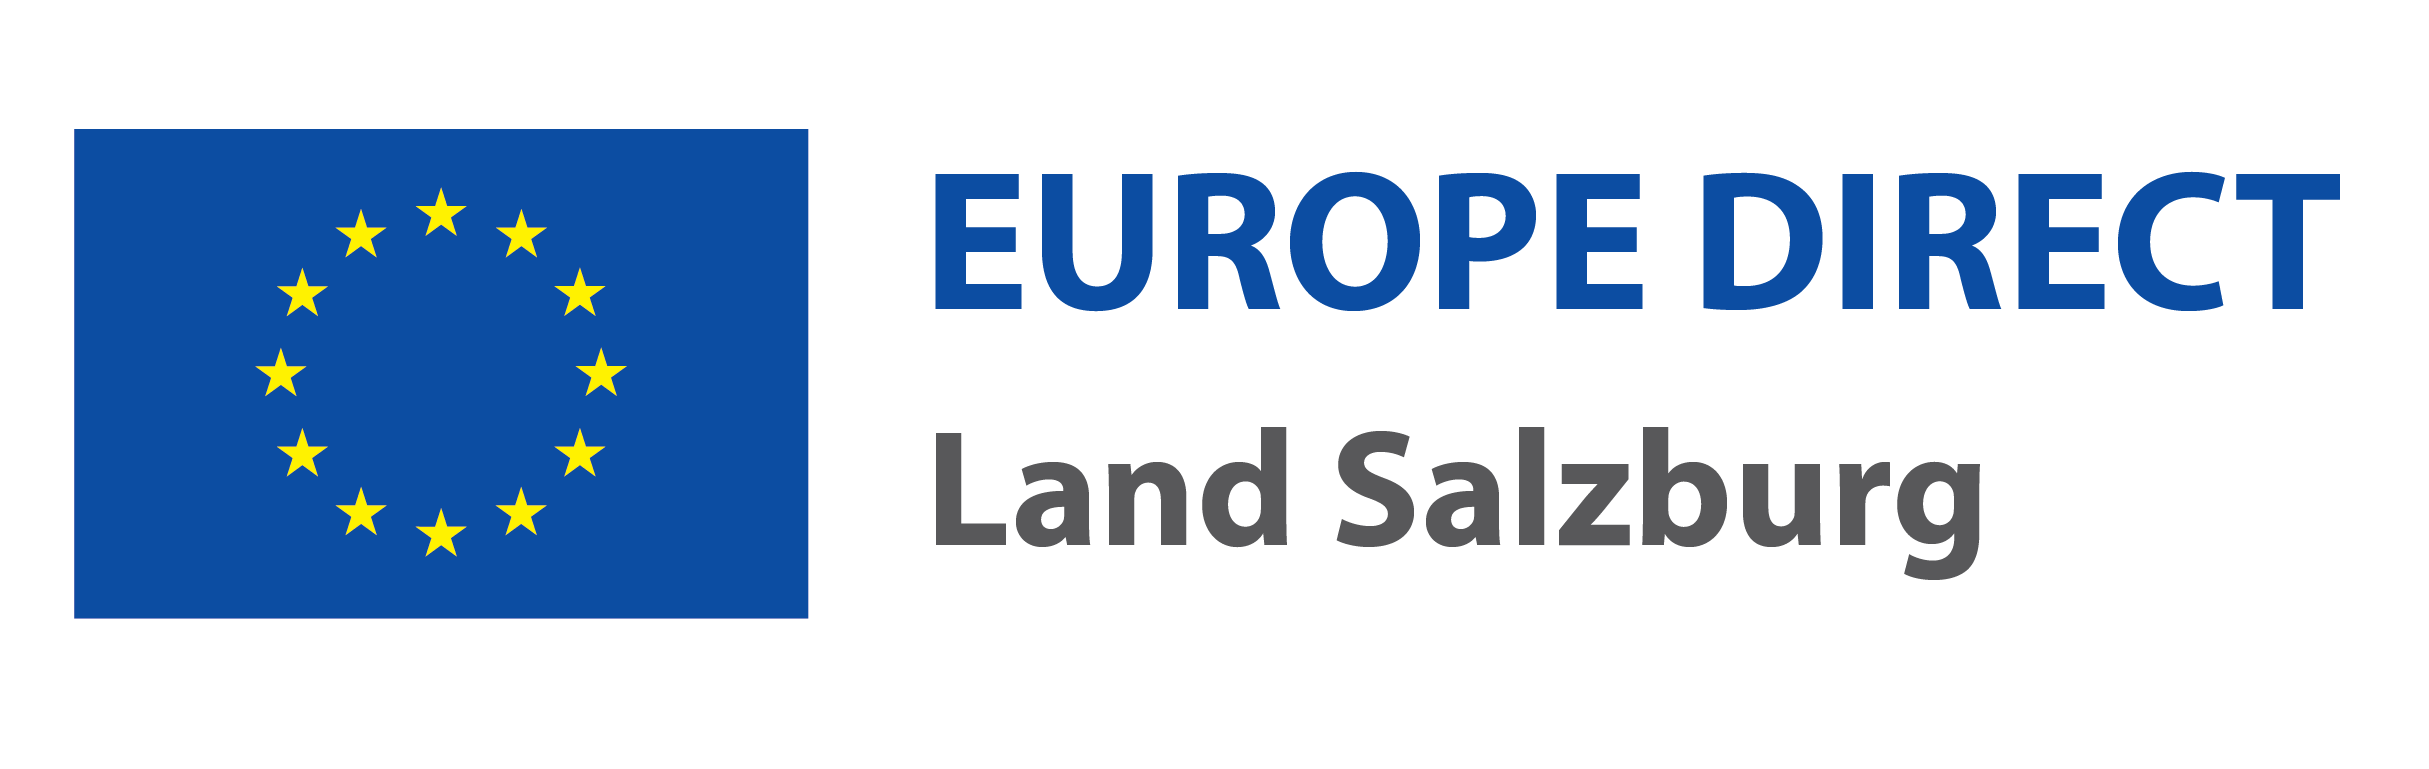 Europe_Direct_Logo_Land_Salzburg